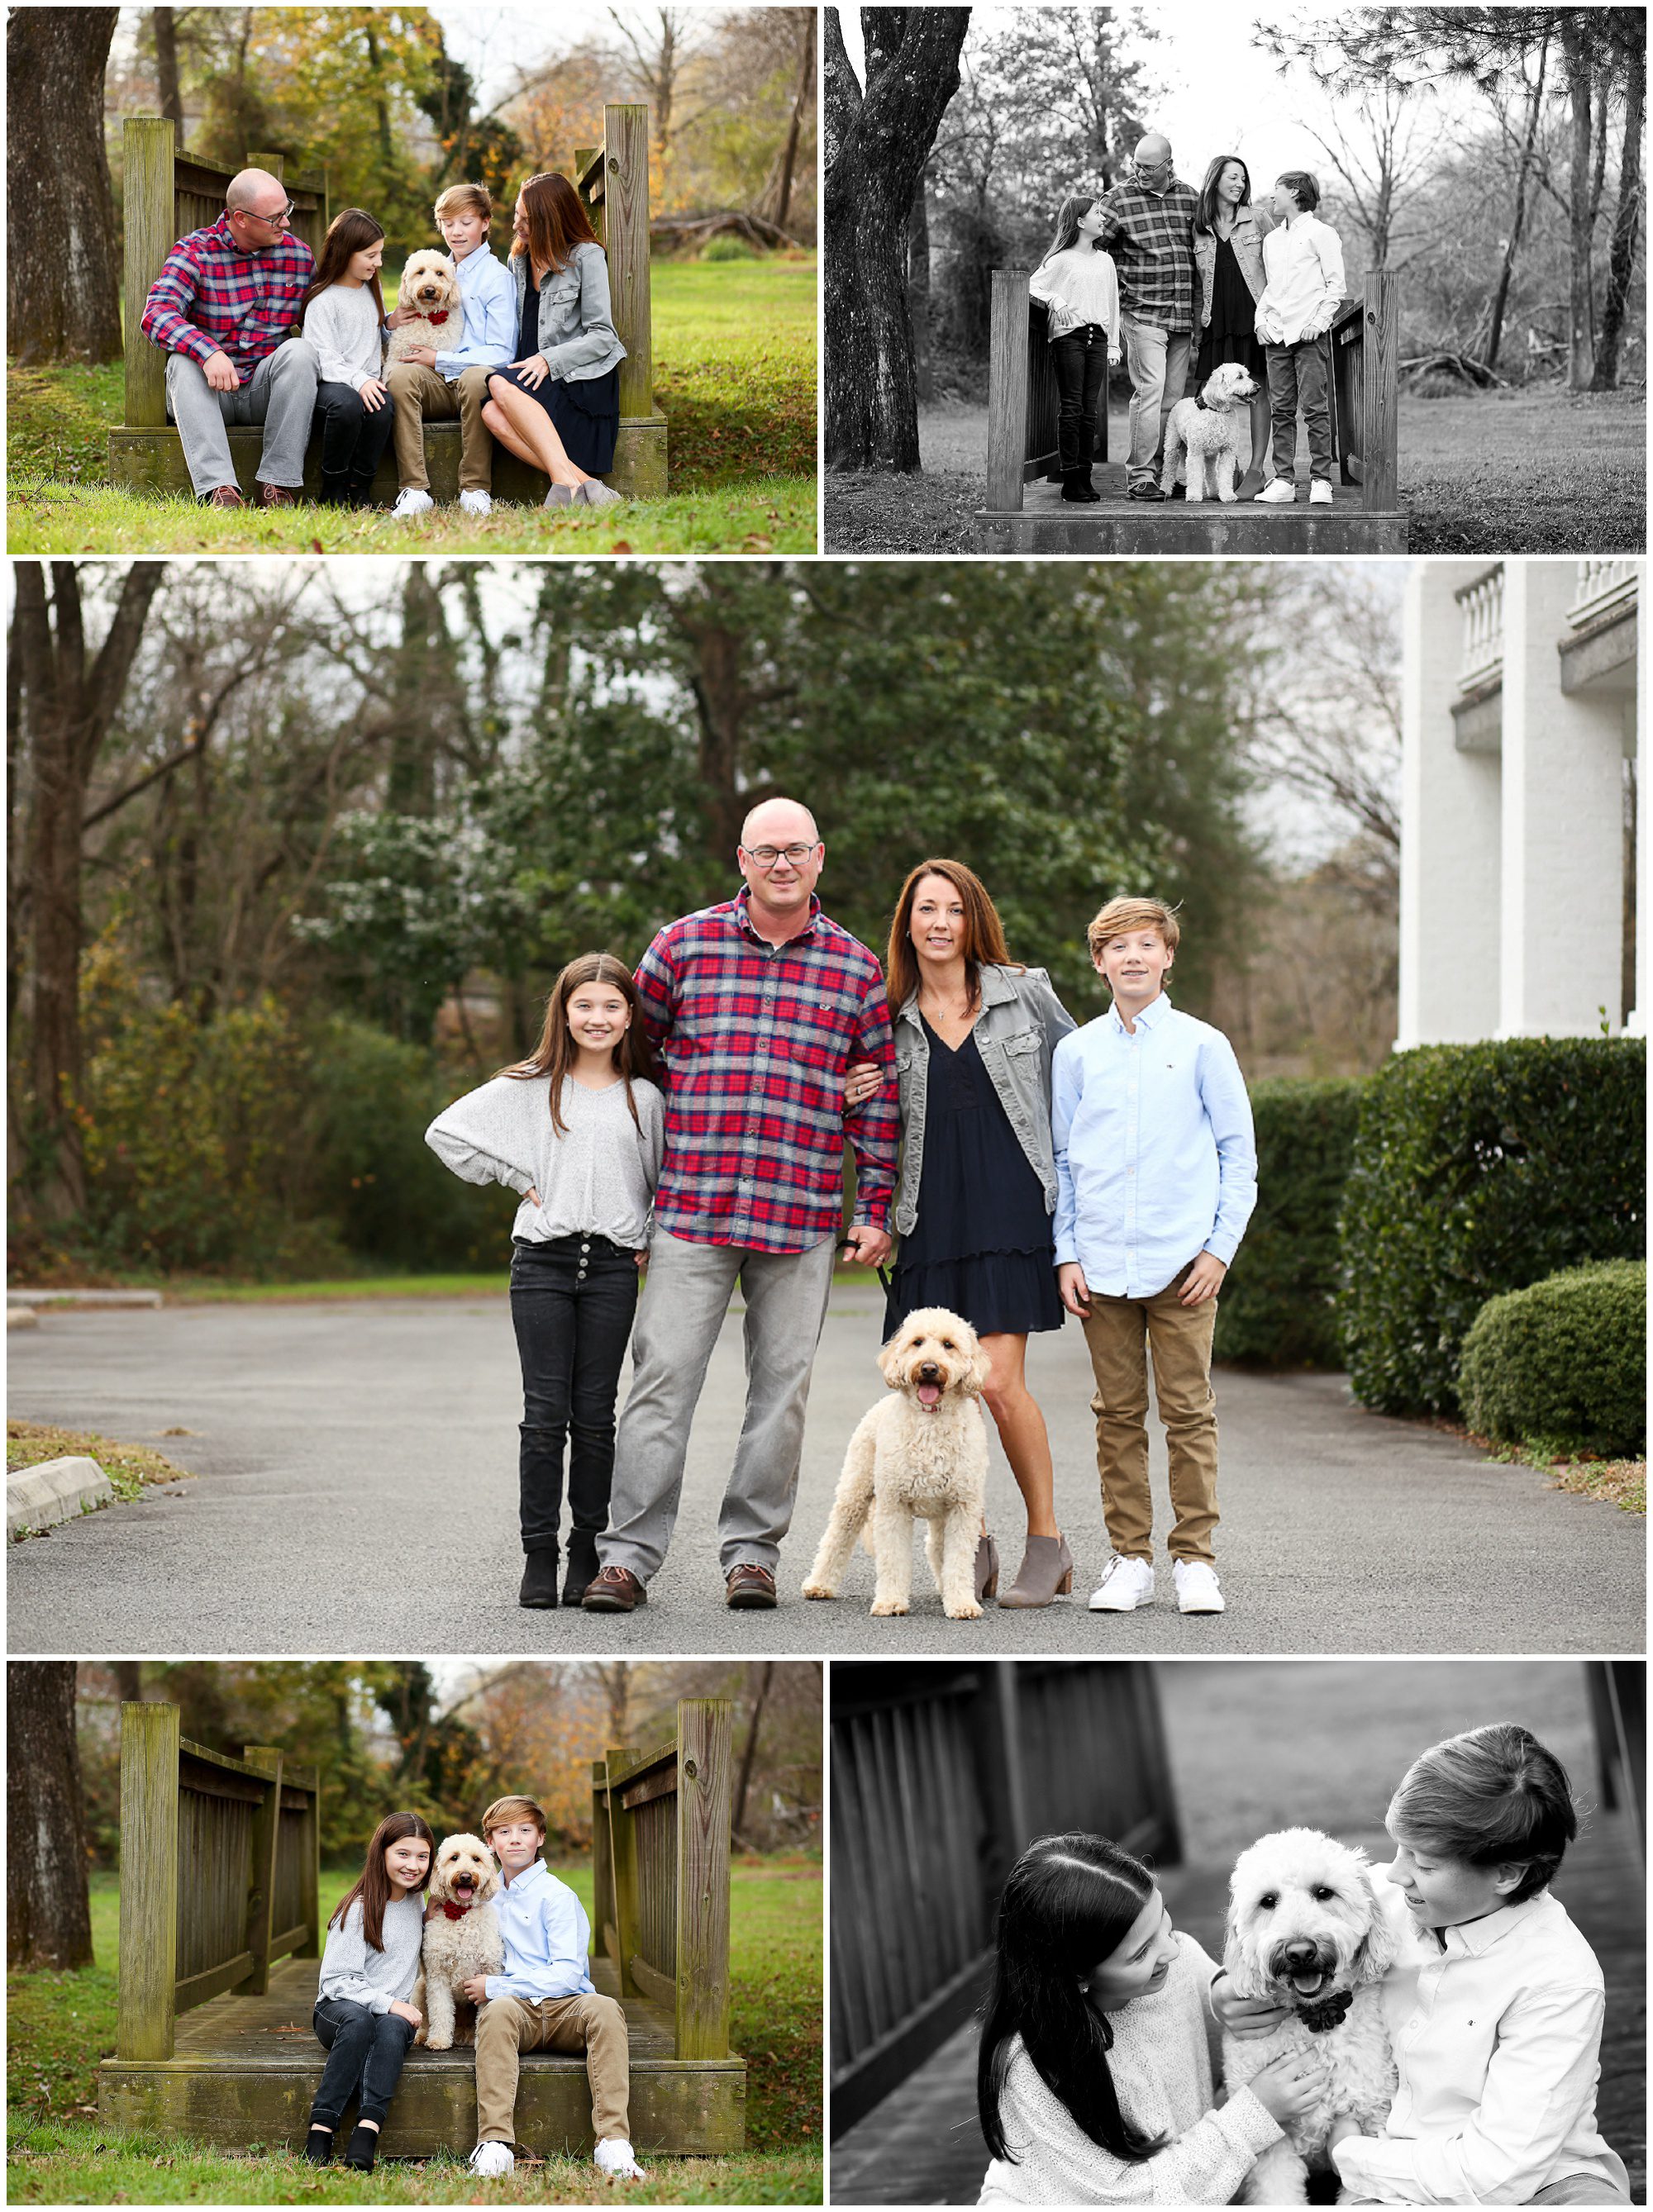 Fluvanna Family Fall Portraits in Gordonsville Dog Pet Photographer Cville Charlottesville Virginia Autumn Town Fun Pictures